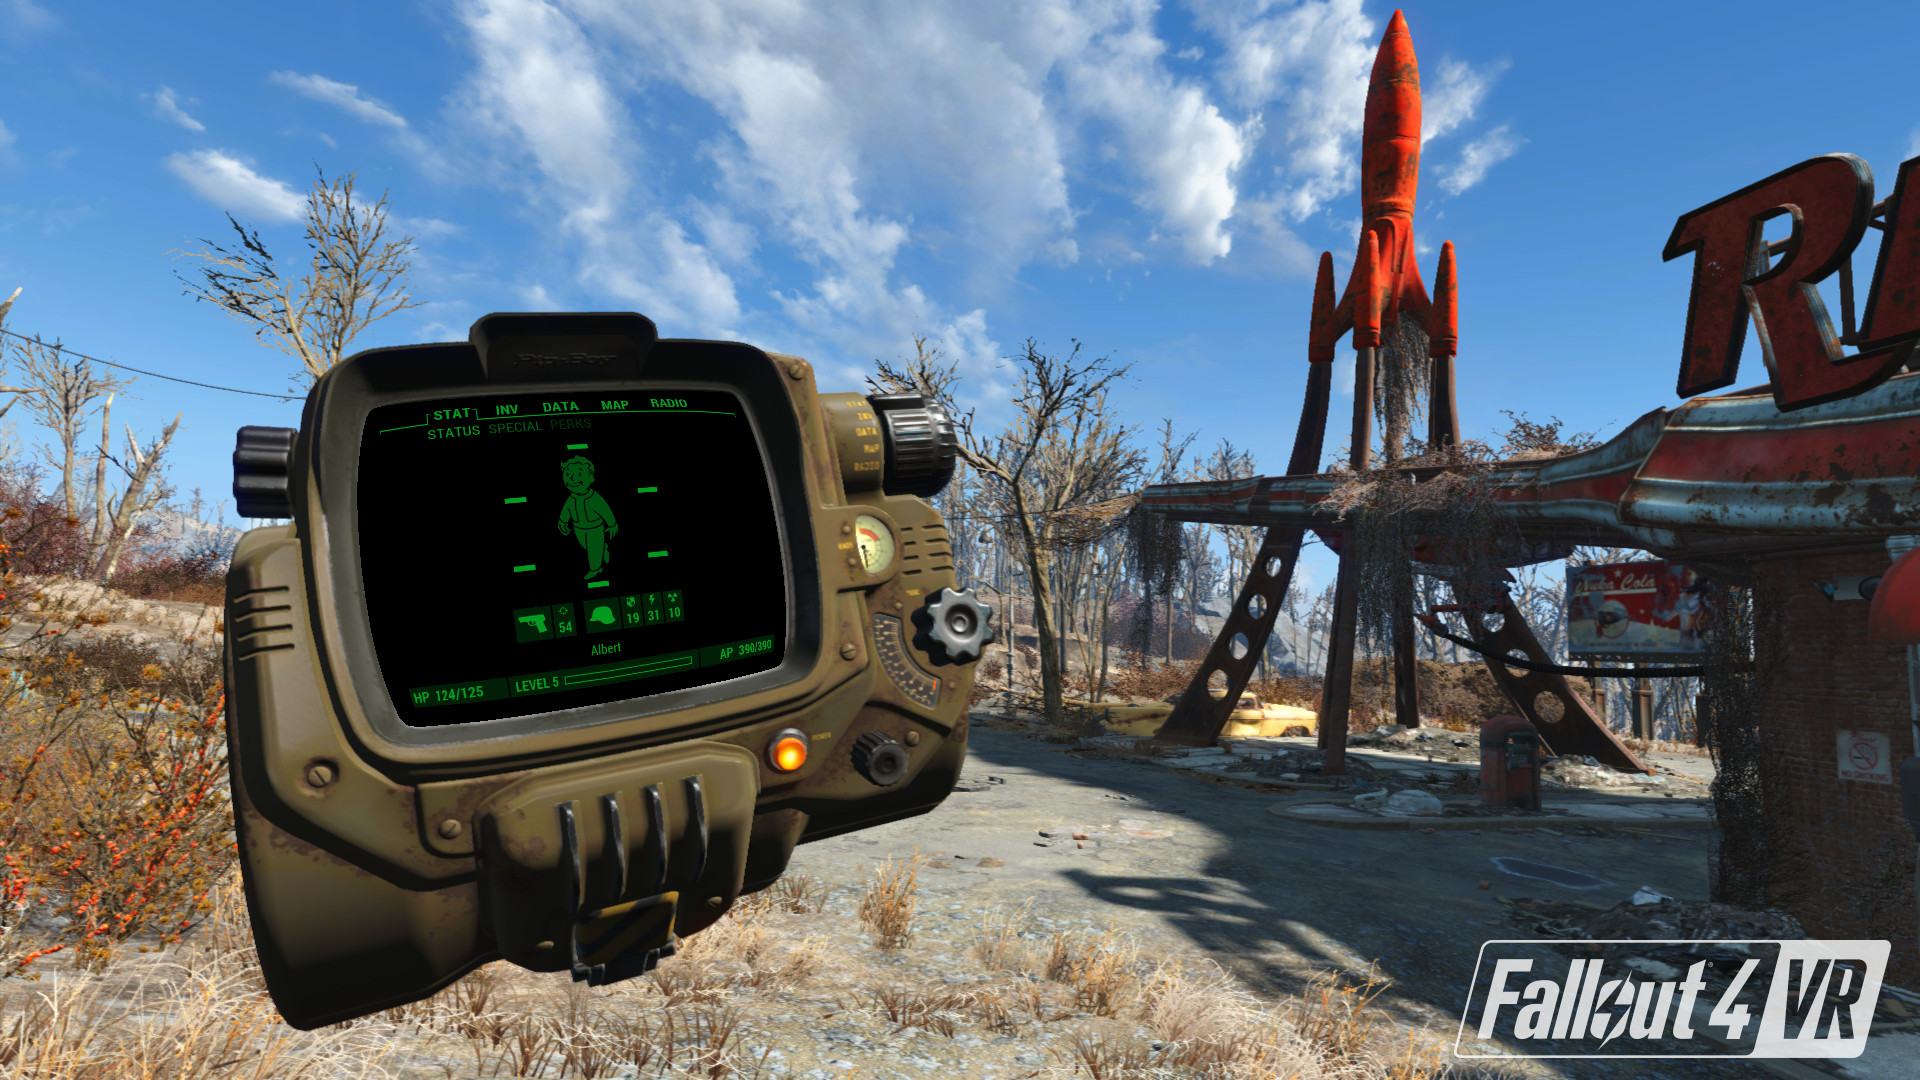 辐射4 VR（Fallout 4 VR）v 1.2.72.0.1 免安装中文版